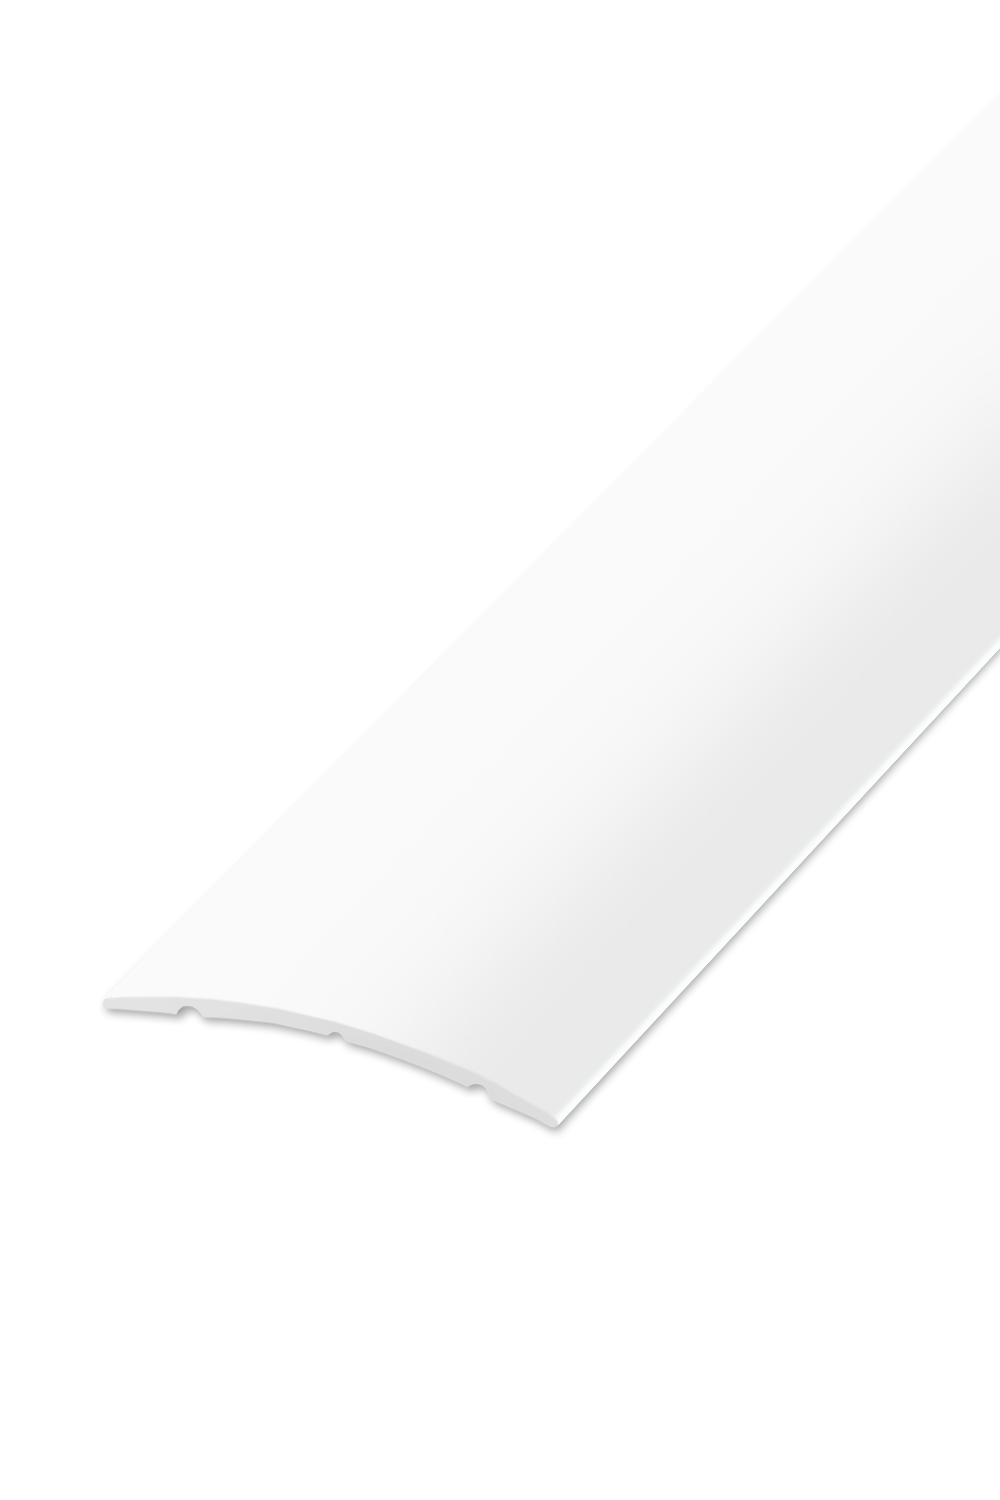 Přechodová lišta STANDARD 32 - Bílá Matná 90 cm